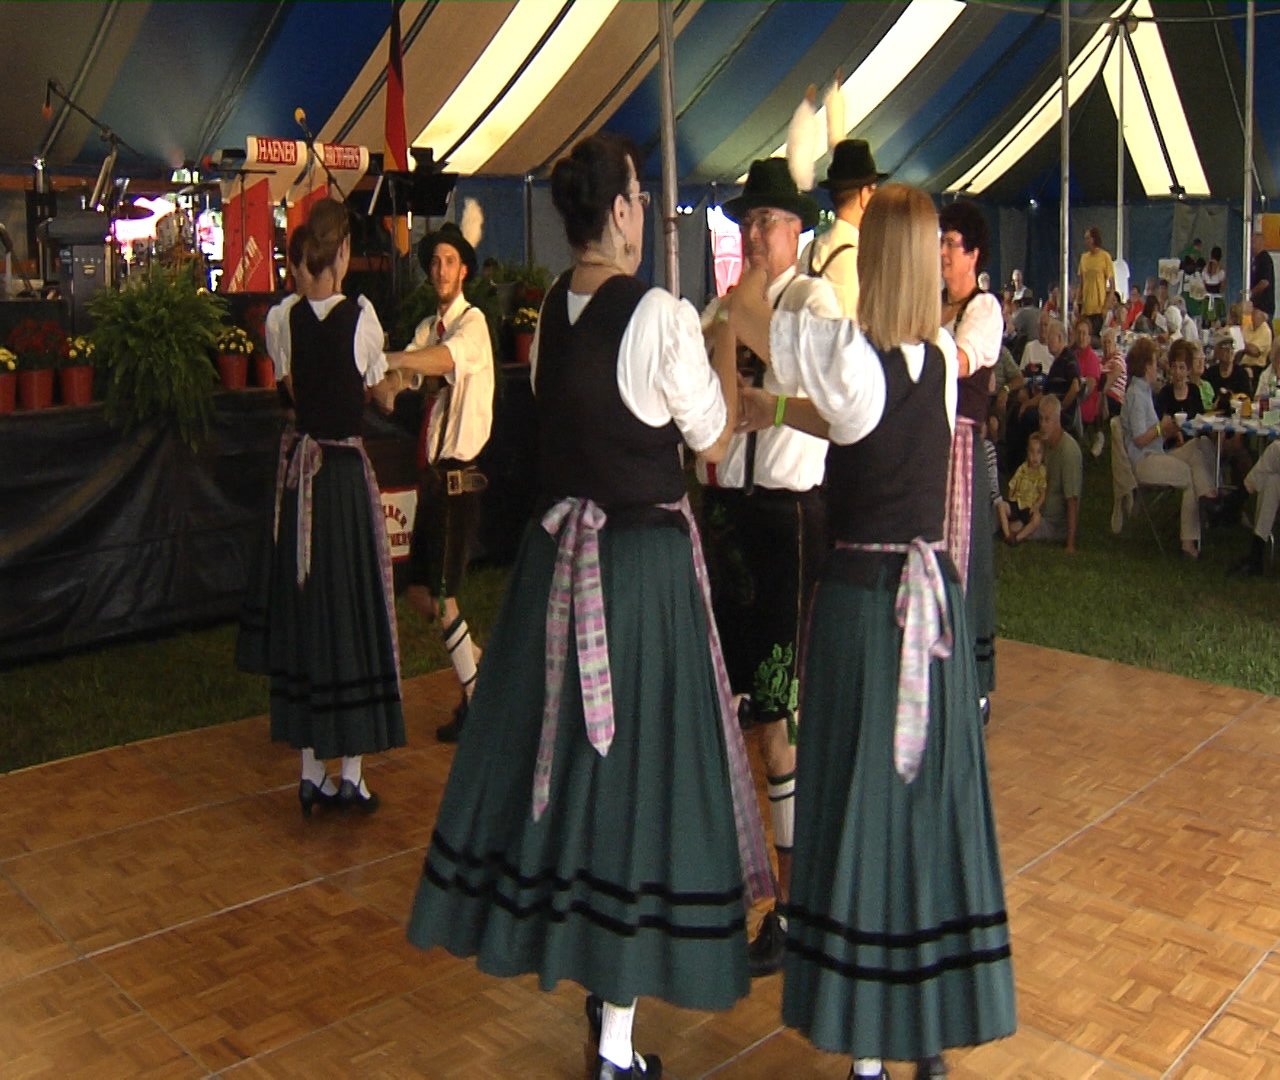 German Festival Brings Beer and Bavarian Dance Erie News Now WICU